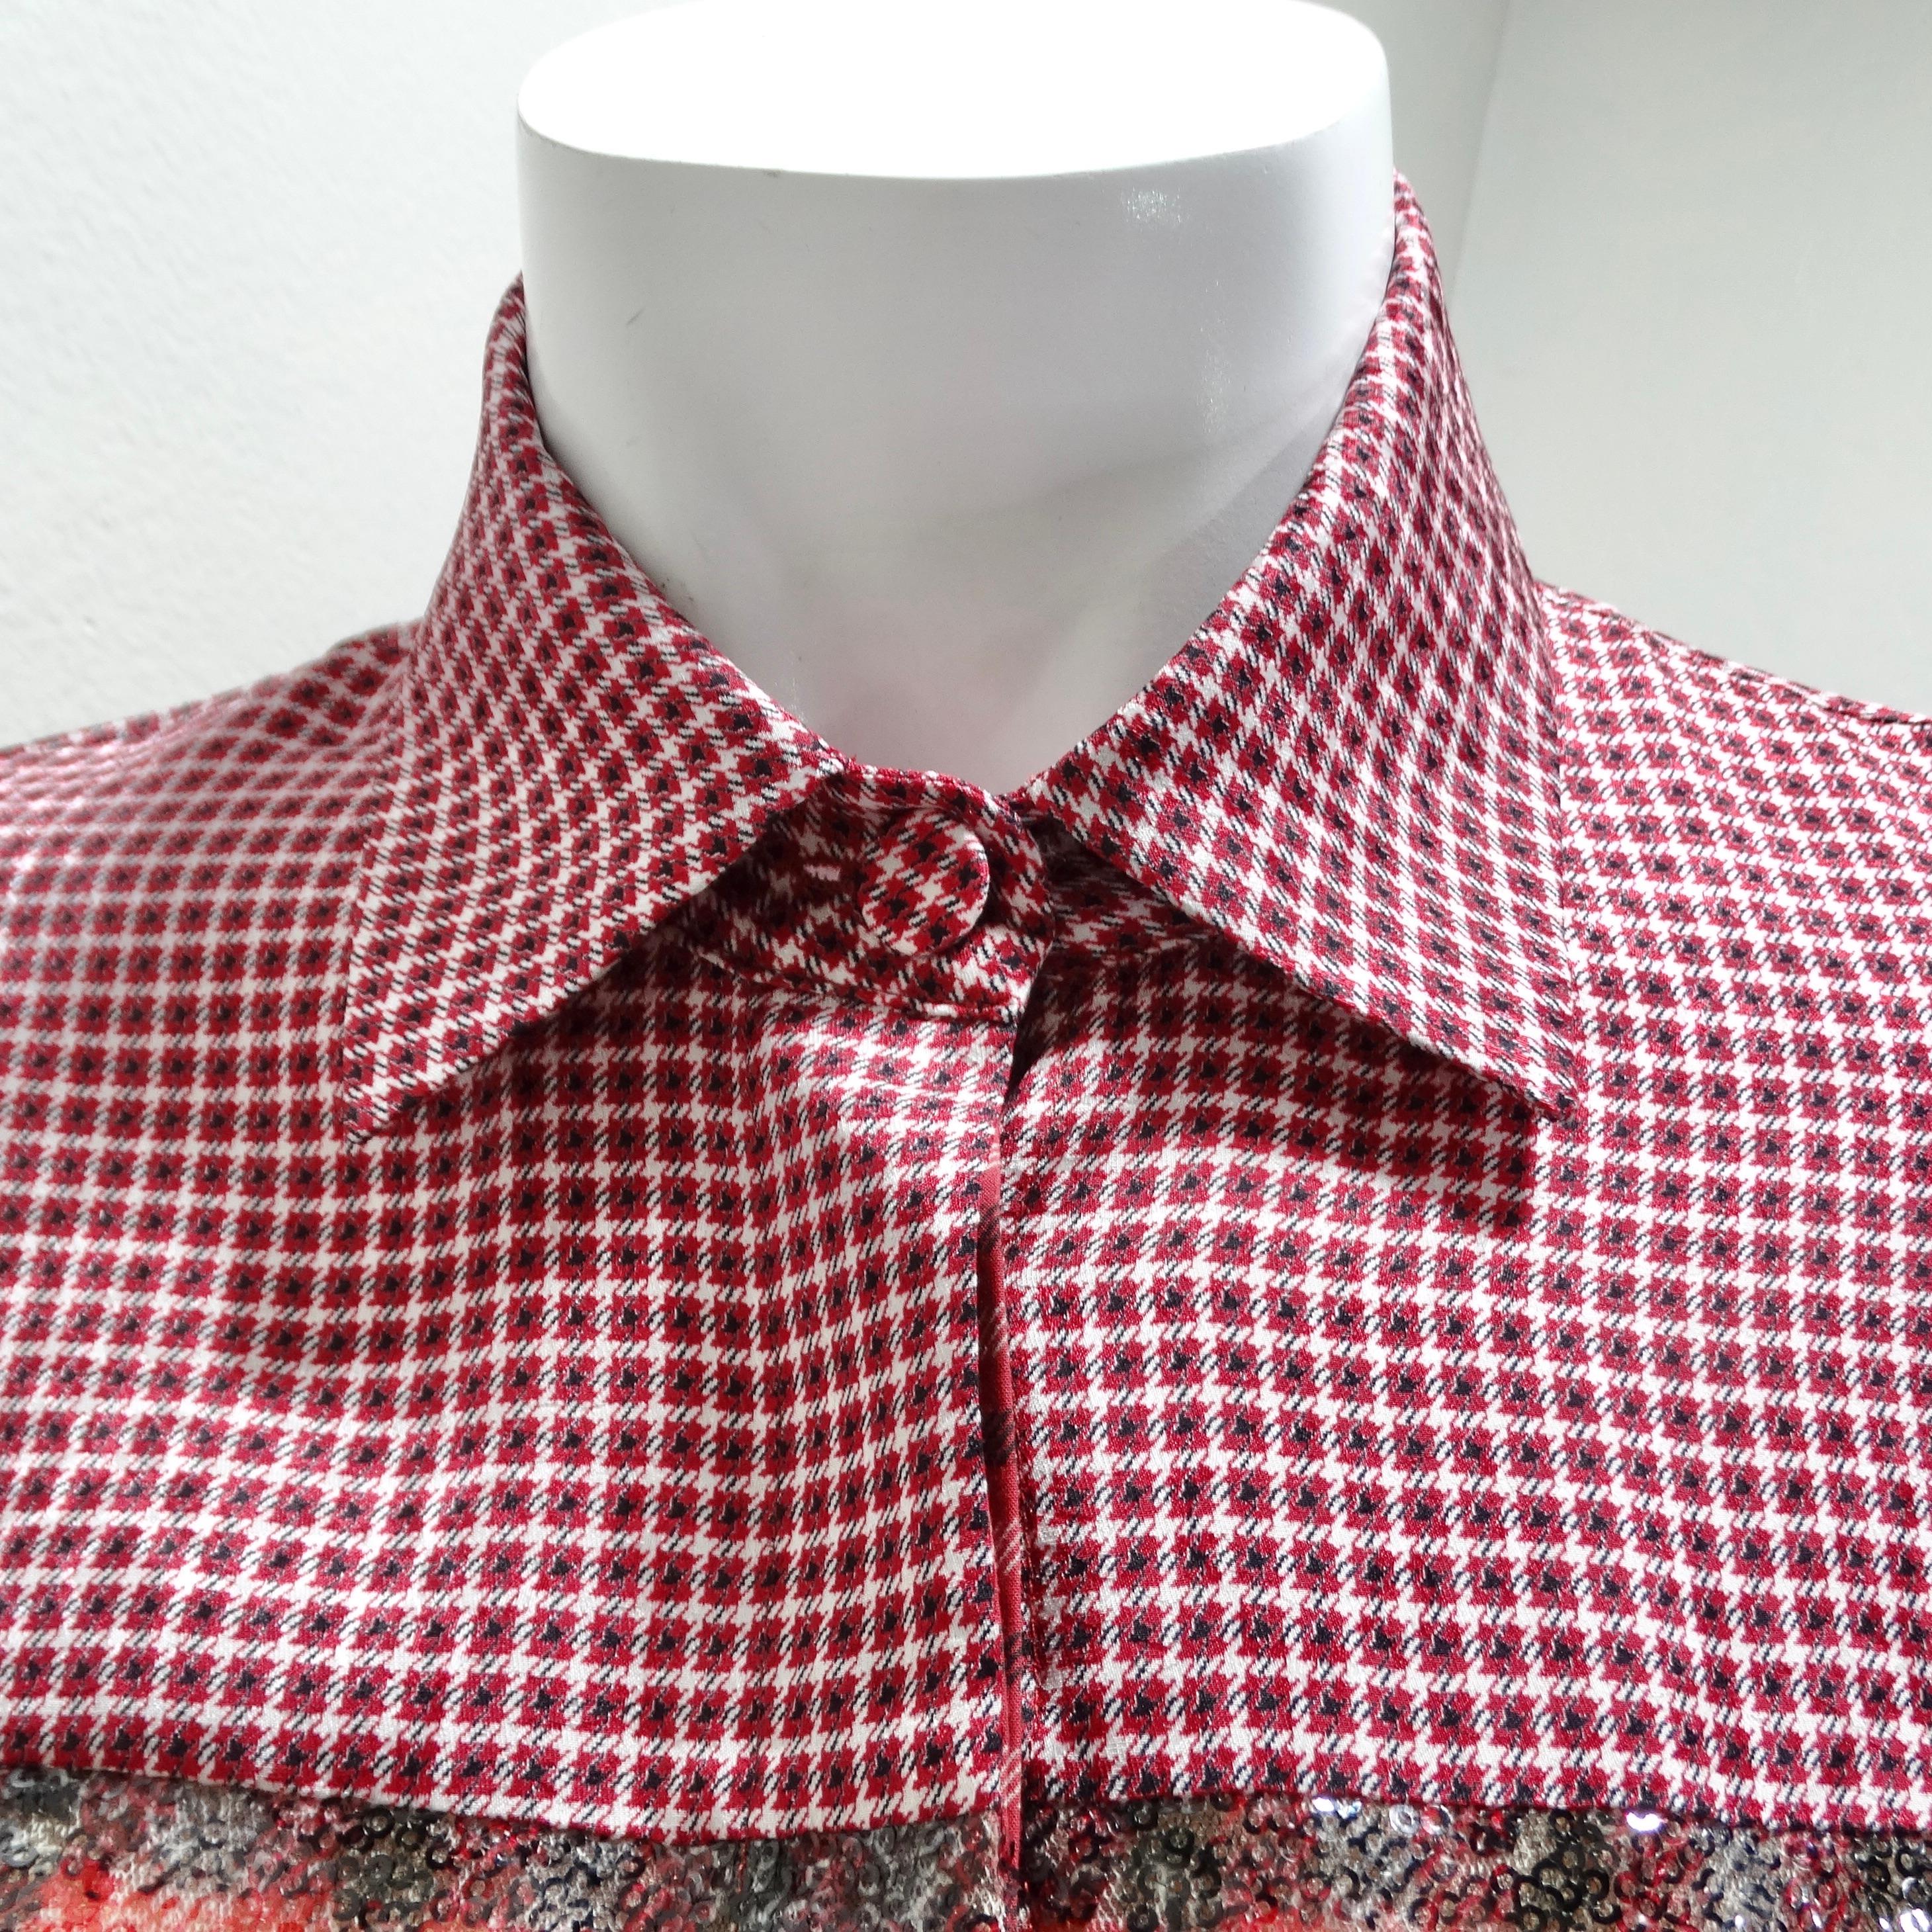 Das Fendi Red Plaid Sequin Button-Up Shirt ist eine witzige und stilvolle Variante des klassischen Flanellhemdes, die leuchtende Prints mit glamourösen Pailletten-Details nahtlos kombiniert. Dieses Hemd ist nicht nur ein Kleidungsstück, sondern ein